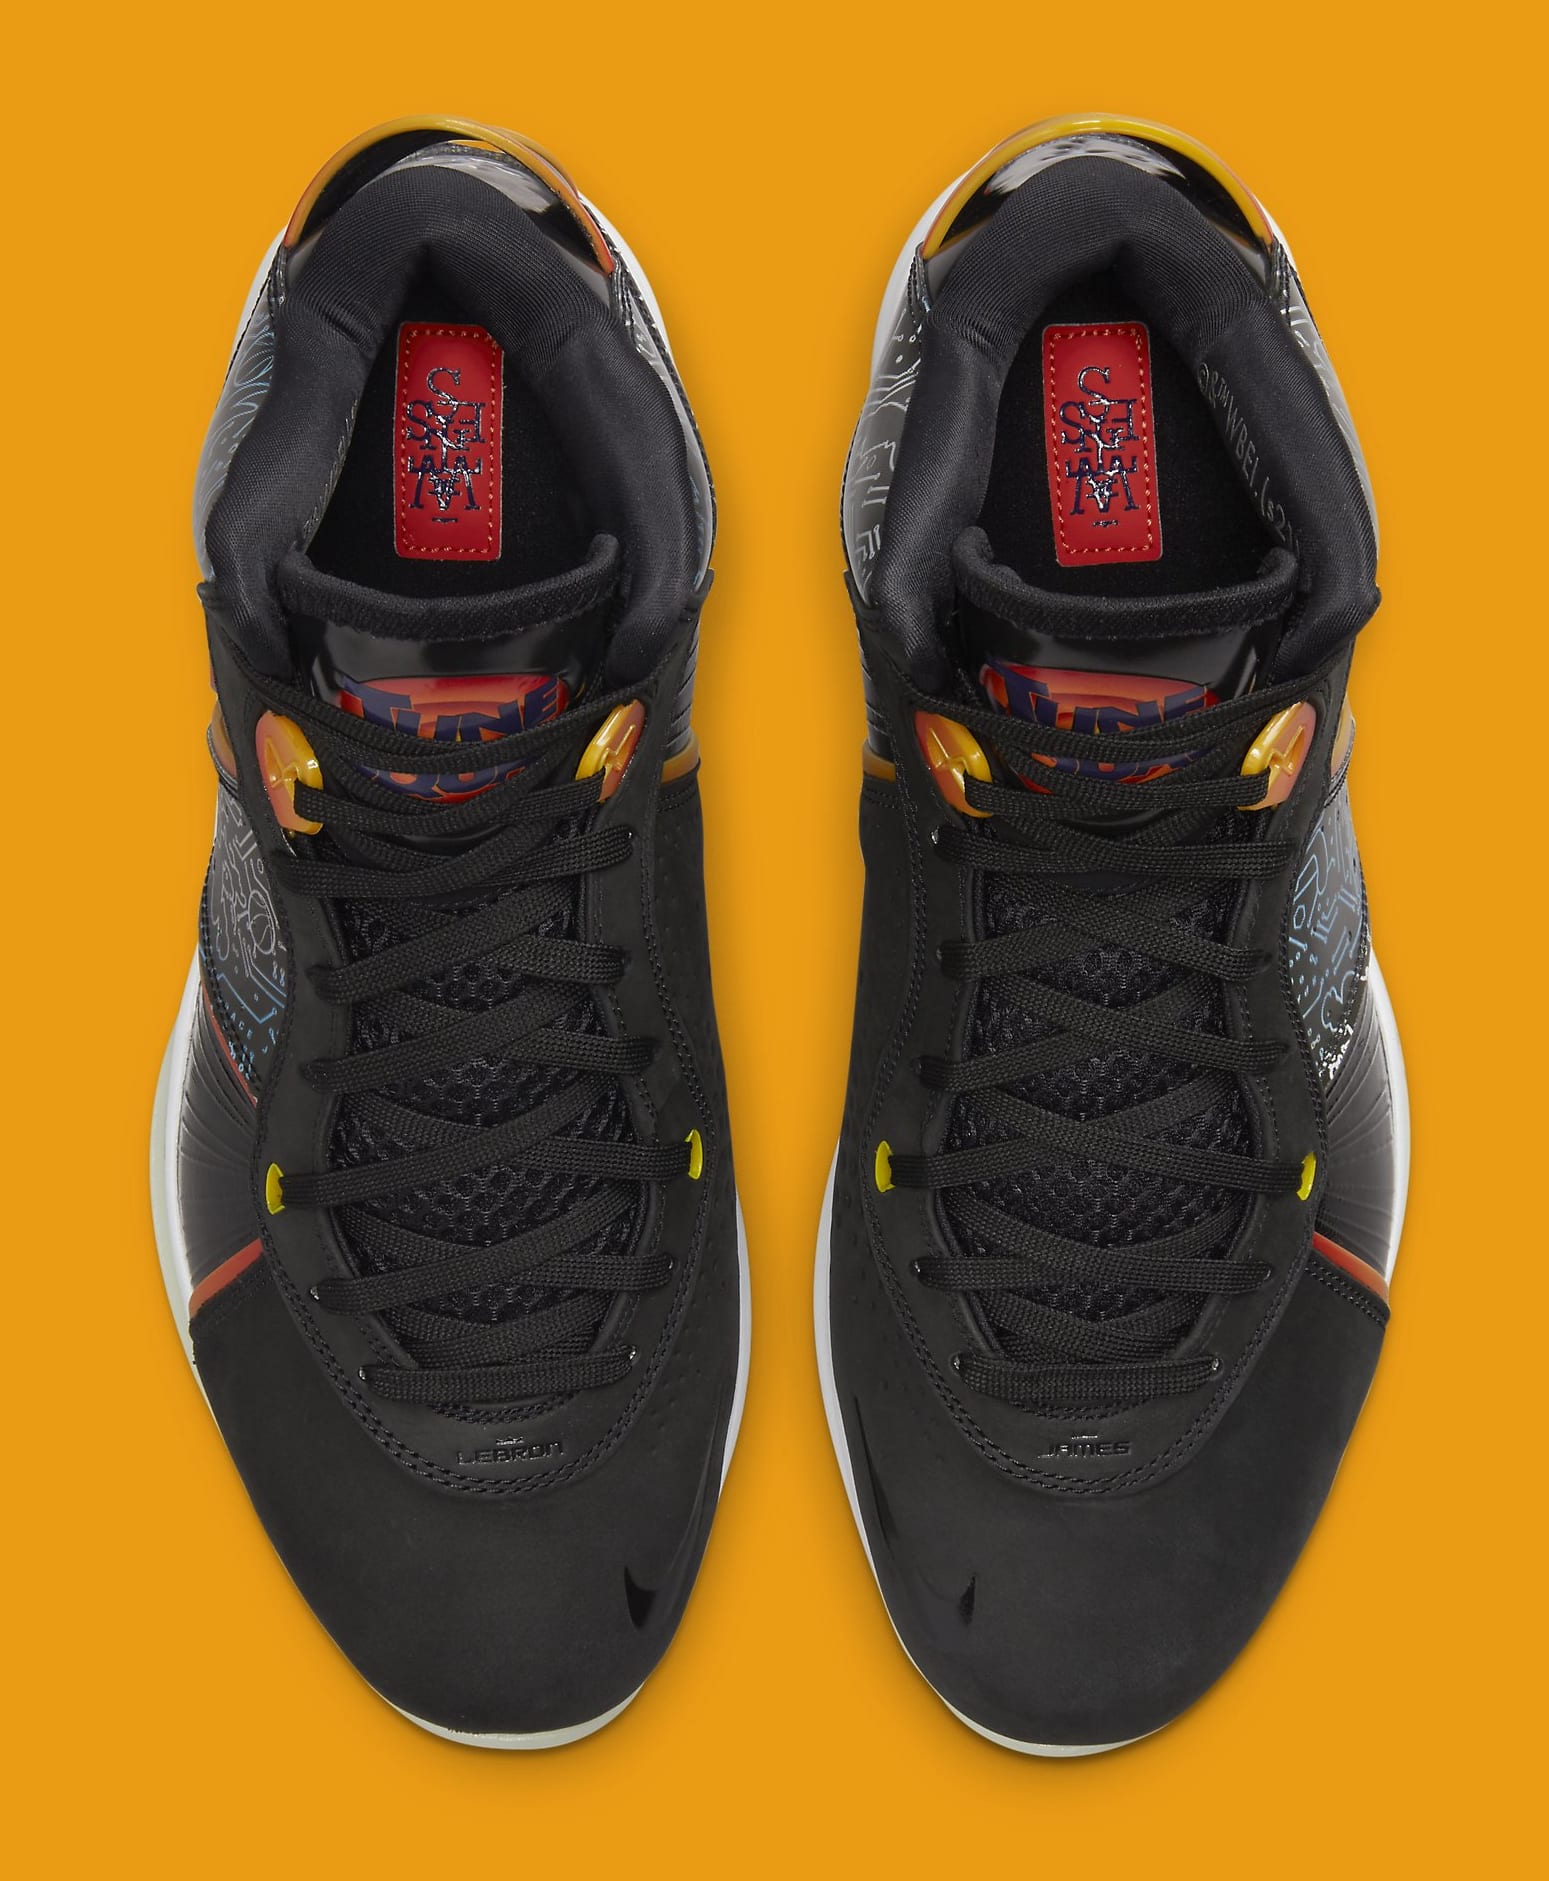 Do You Like the Nike LeBron 8 Space Jam?